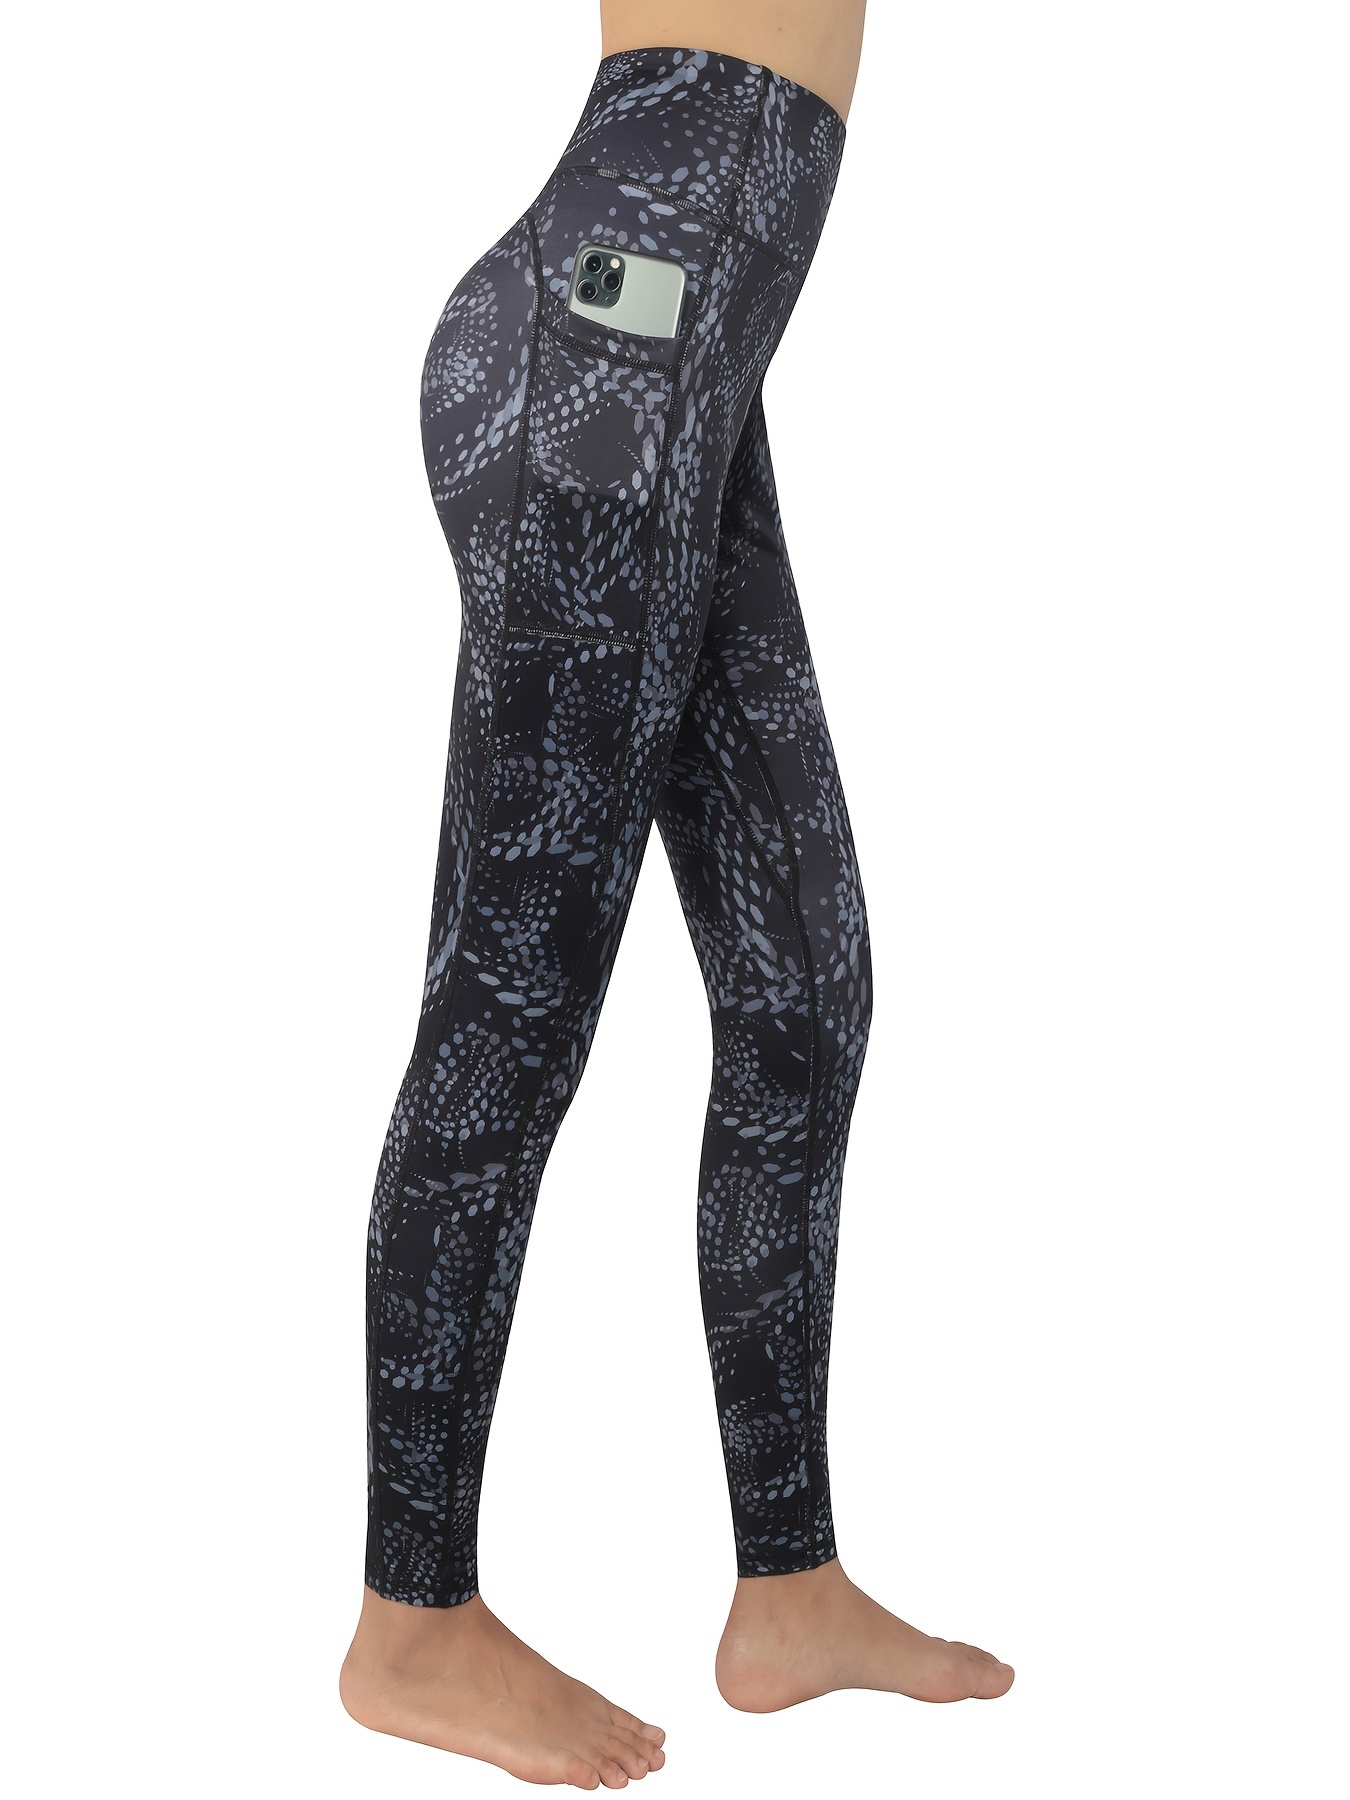 Pantalones deportivos para mujer de color azul oscuro Bolf CK-01 AZUL OSCURO